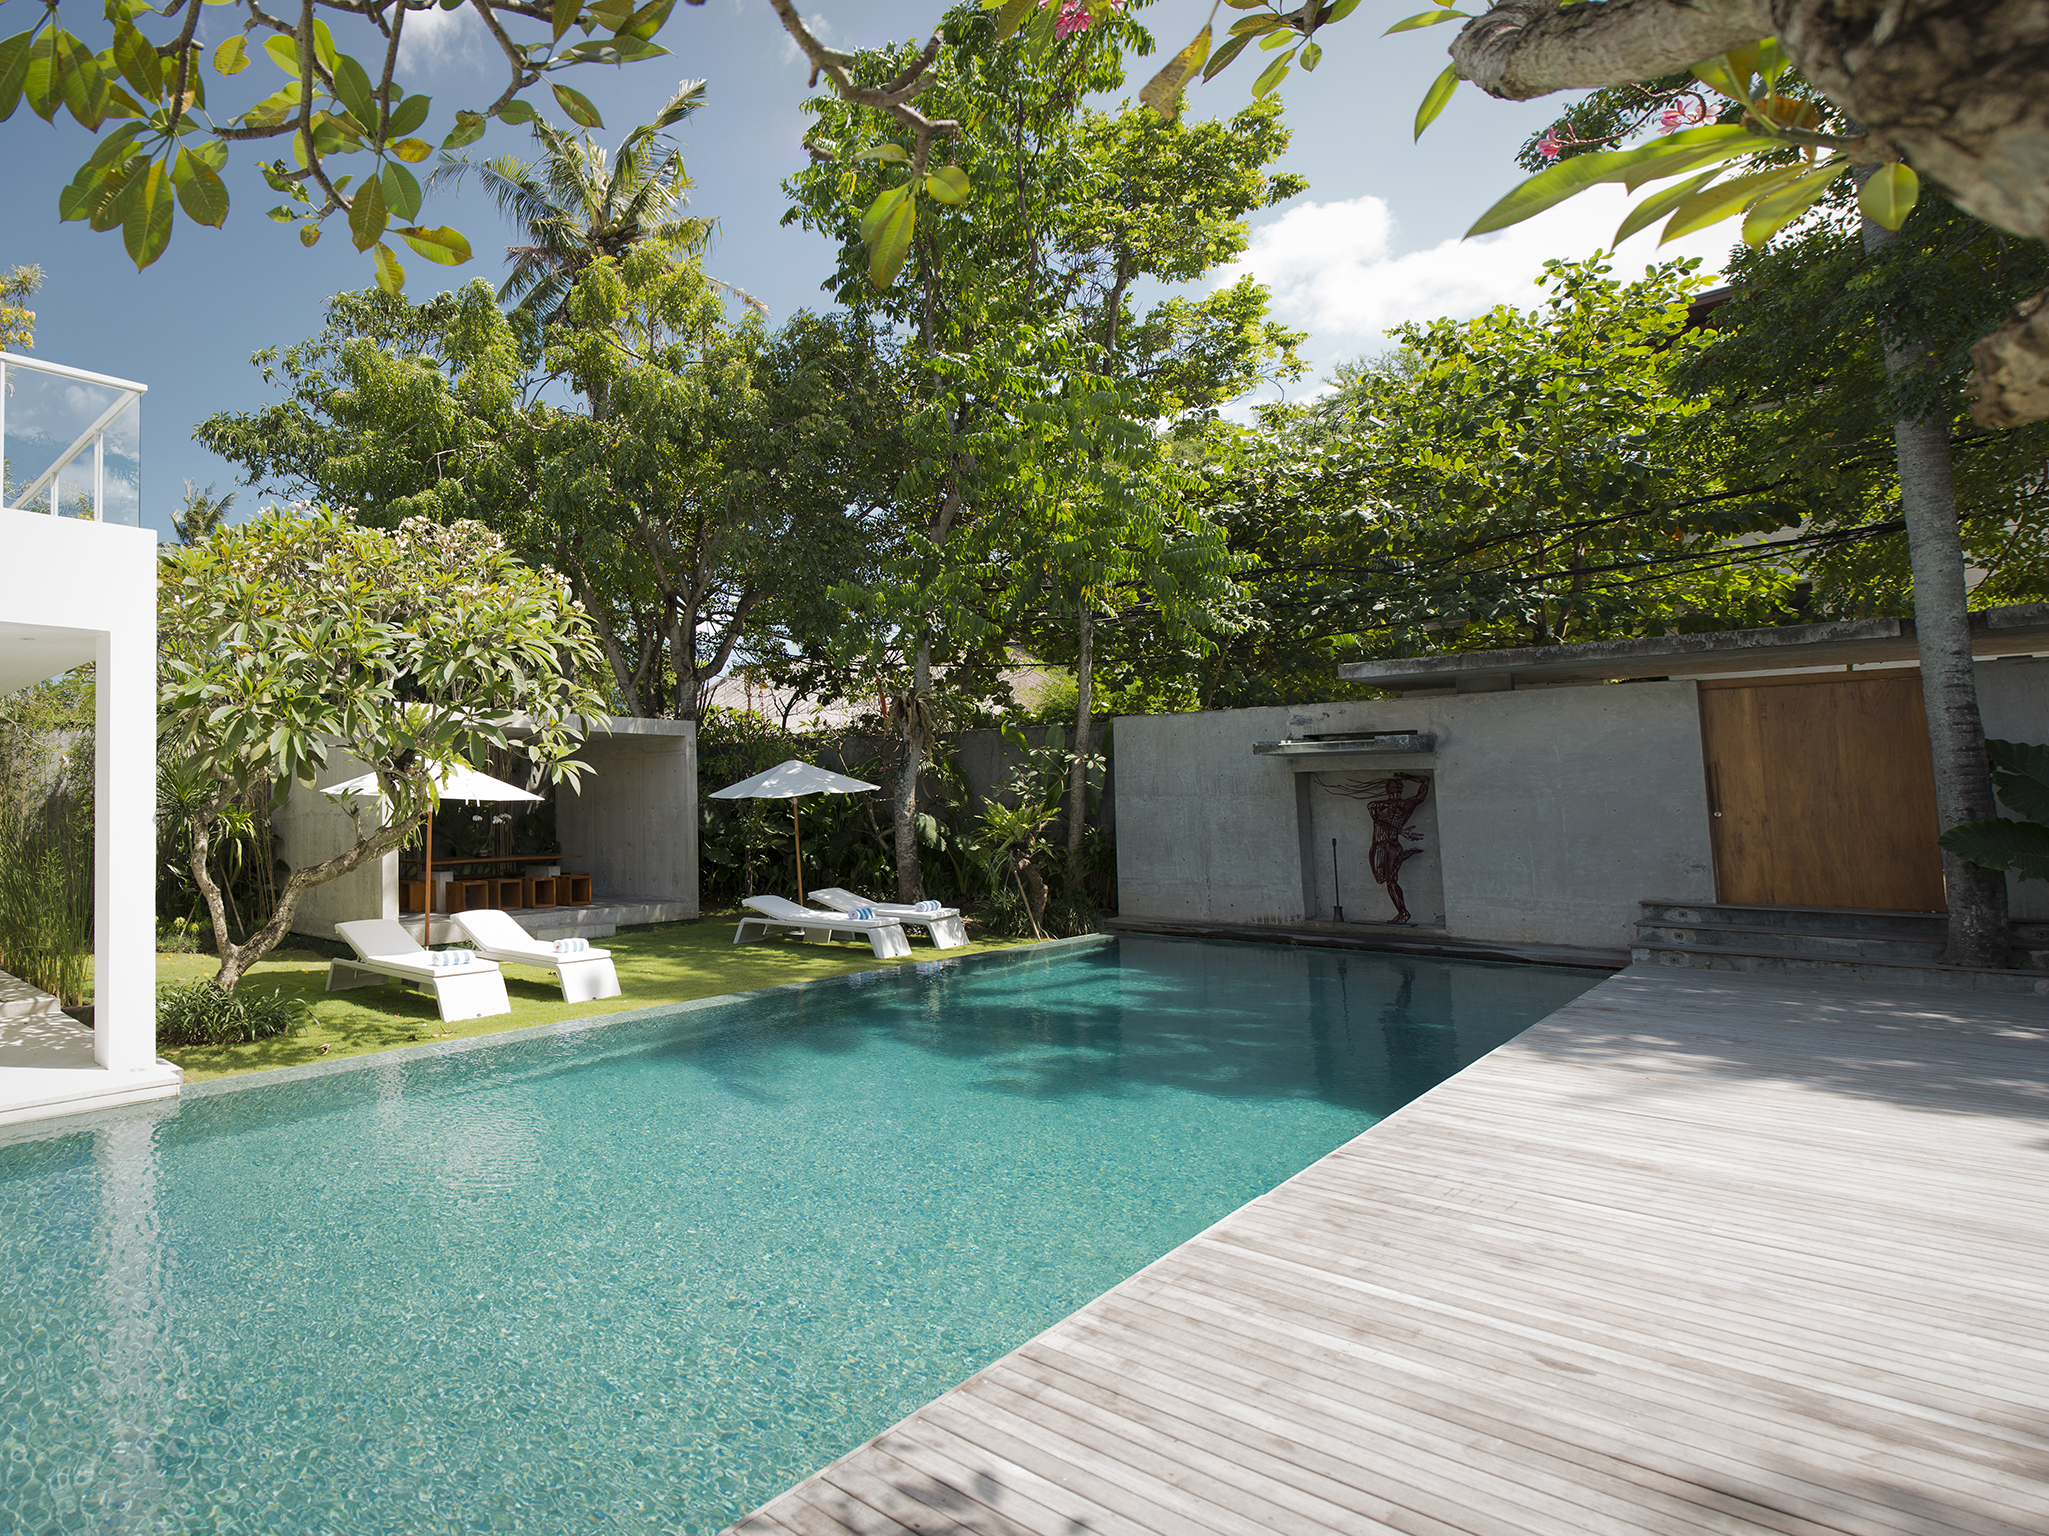 Villa Canggu - Villa South pool and deck - Villa Canggu South, Canggu, Bali